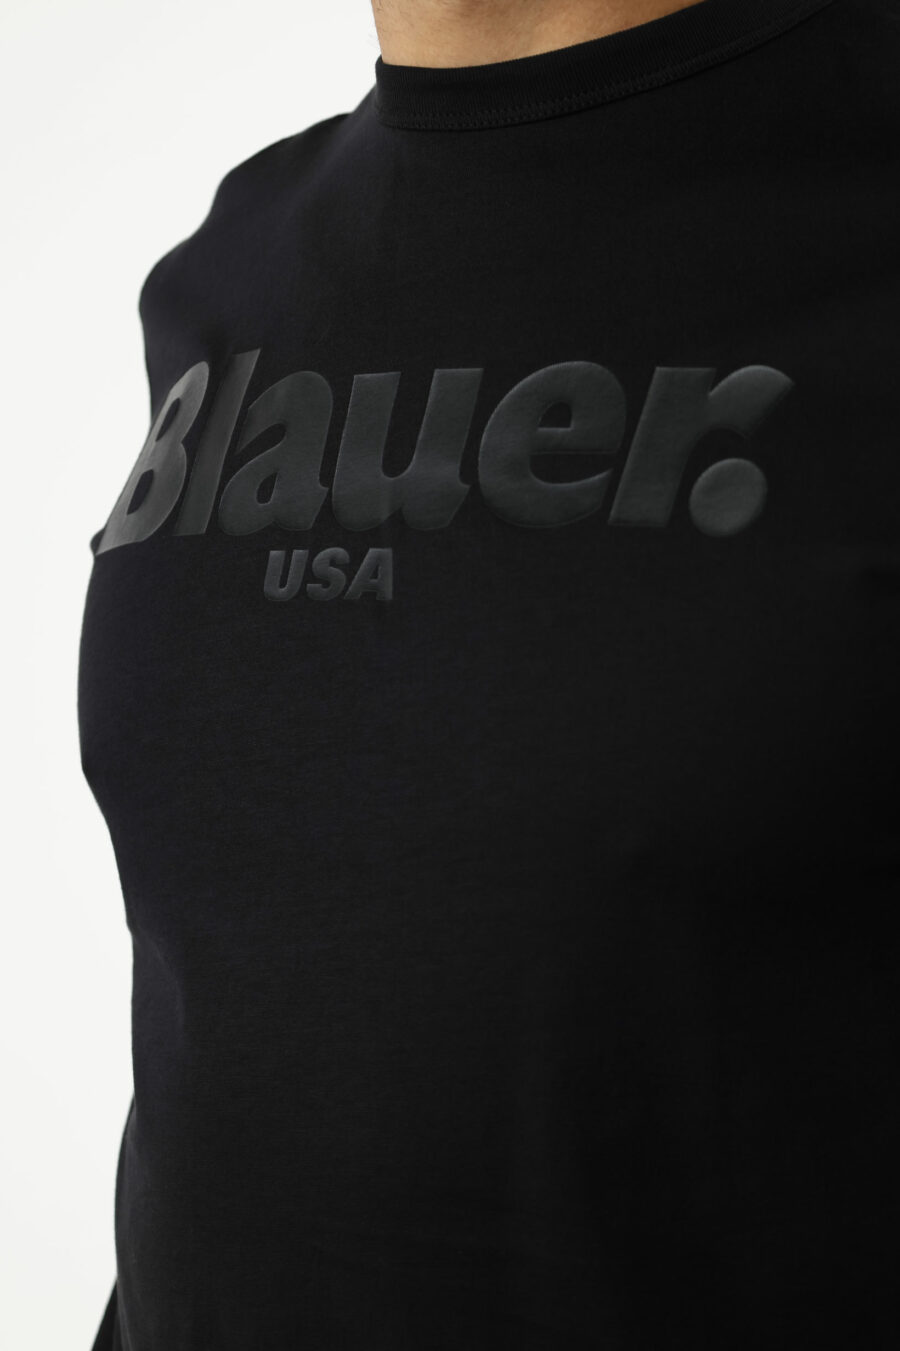 Schwarzes T-Shirt mit monochromem Maxi-Logo in der Mitte - 111148